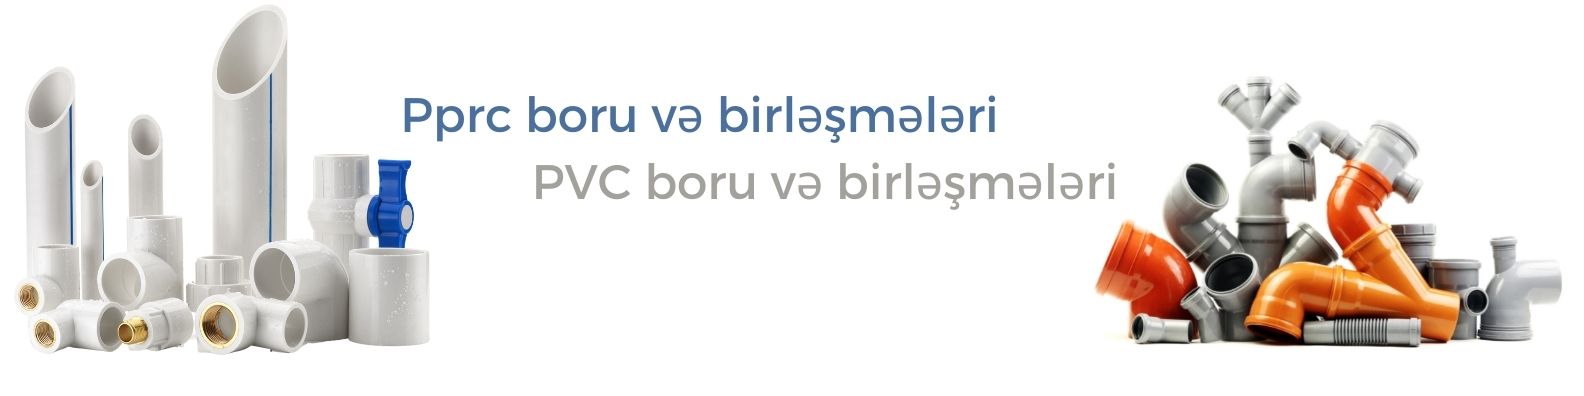 Pprc boru və birləşmələri PVC boru və birləşmələri